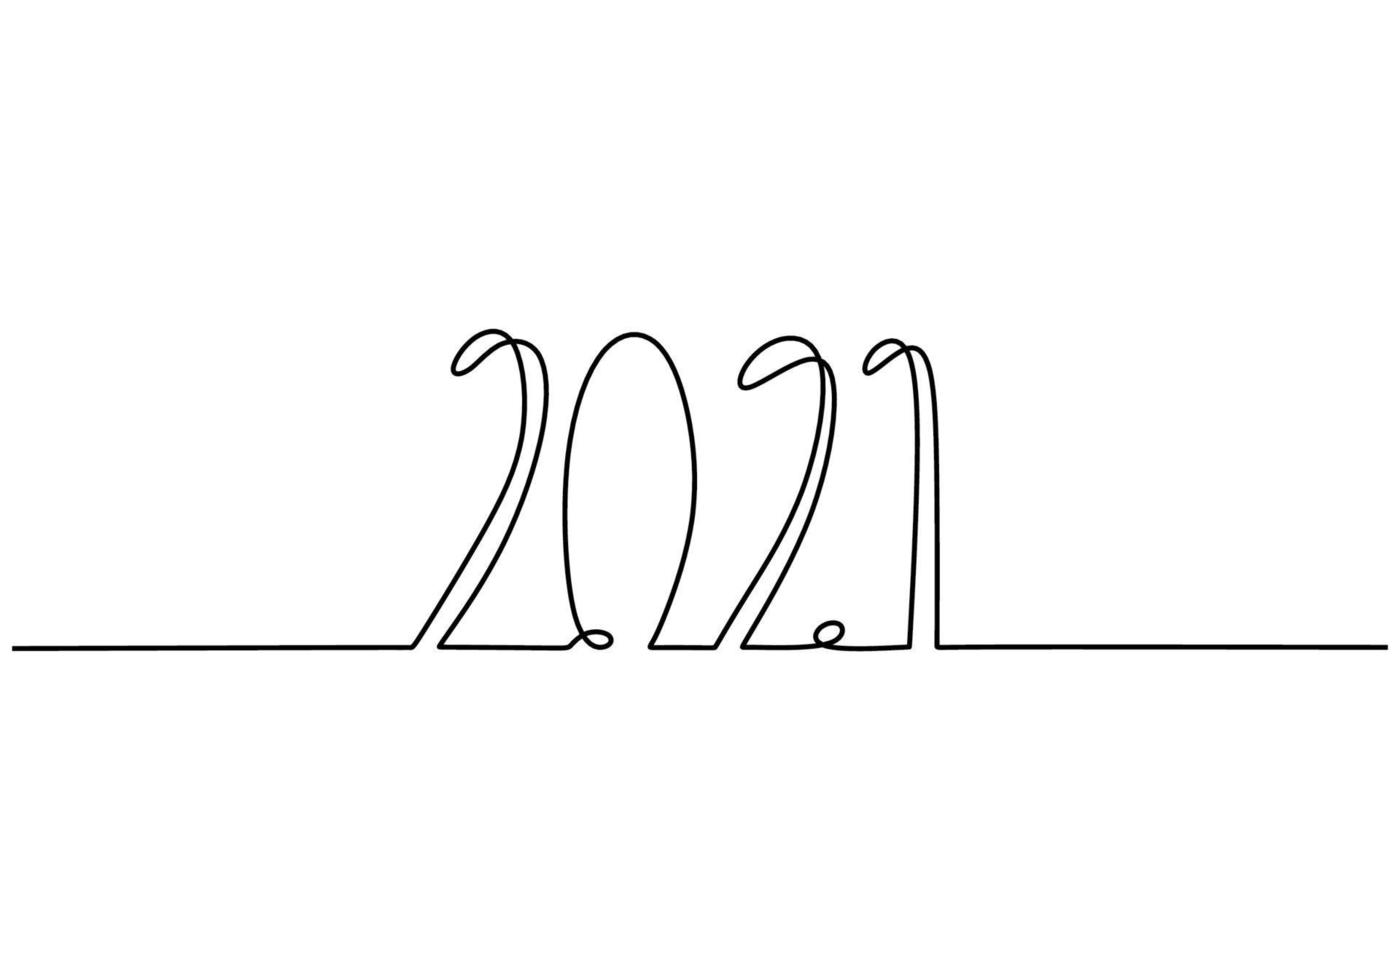 Neujahrsentwurf 2021 in minimalistischer schwarzer linearer Skizze des kontinuierlichen Strichzeichnungen-Zeichnungsstils lokalisiert auf weißem Hintergrund. Jahr des Stiers. Frohes neues Jahr Konzept. Vektor-Design-Illustration vektor